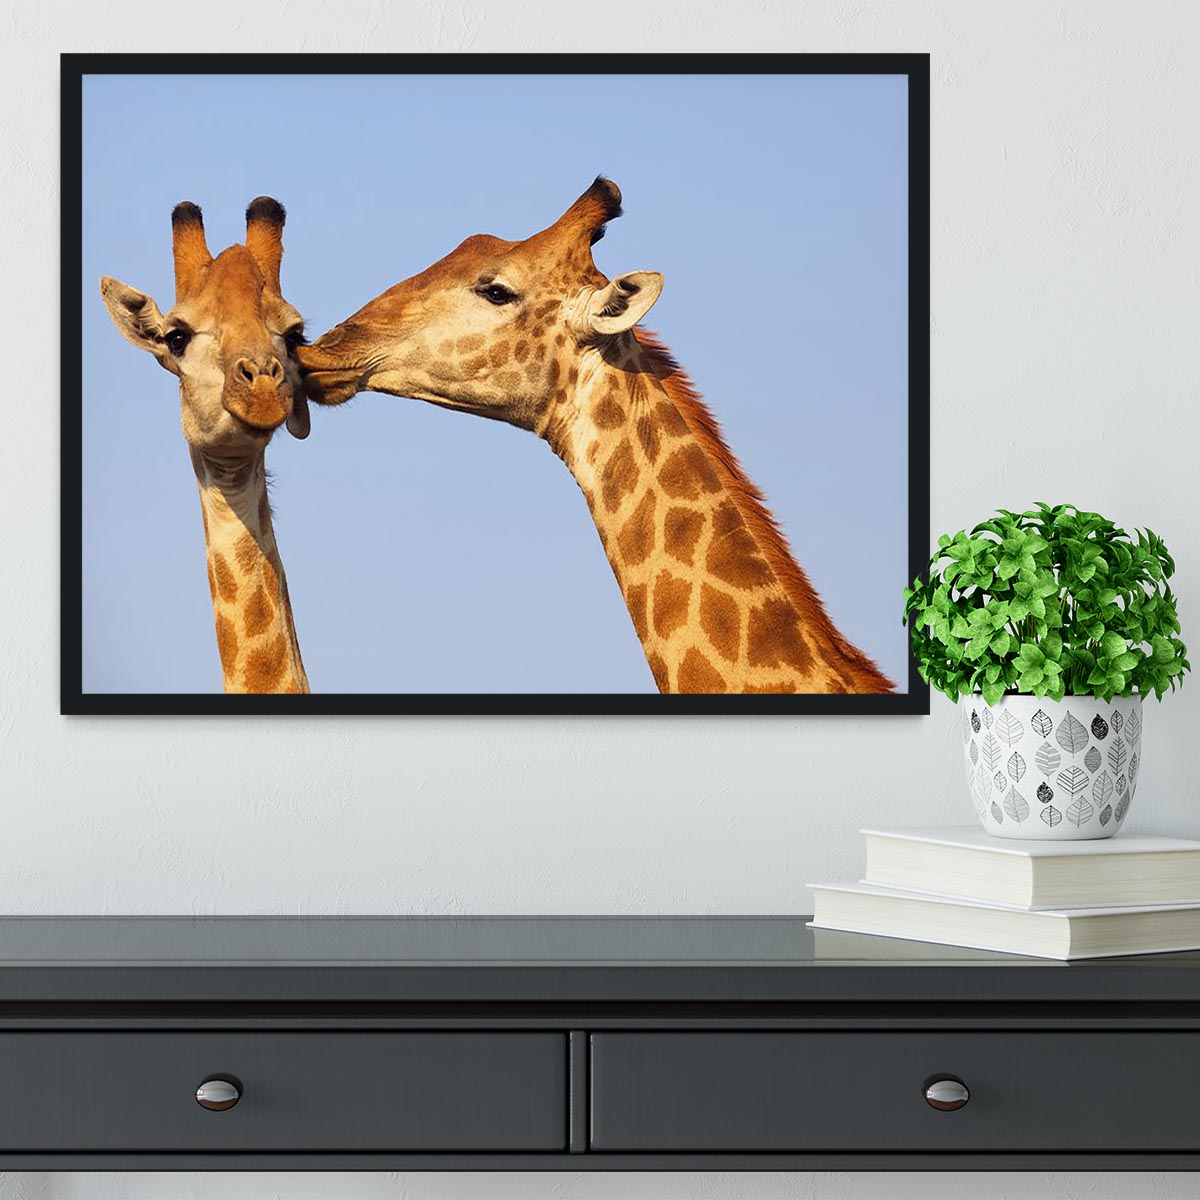 Giraffe pair bonding Framed Print - Canvas Art Rocks - 2